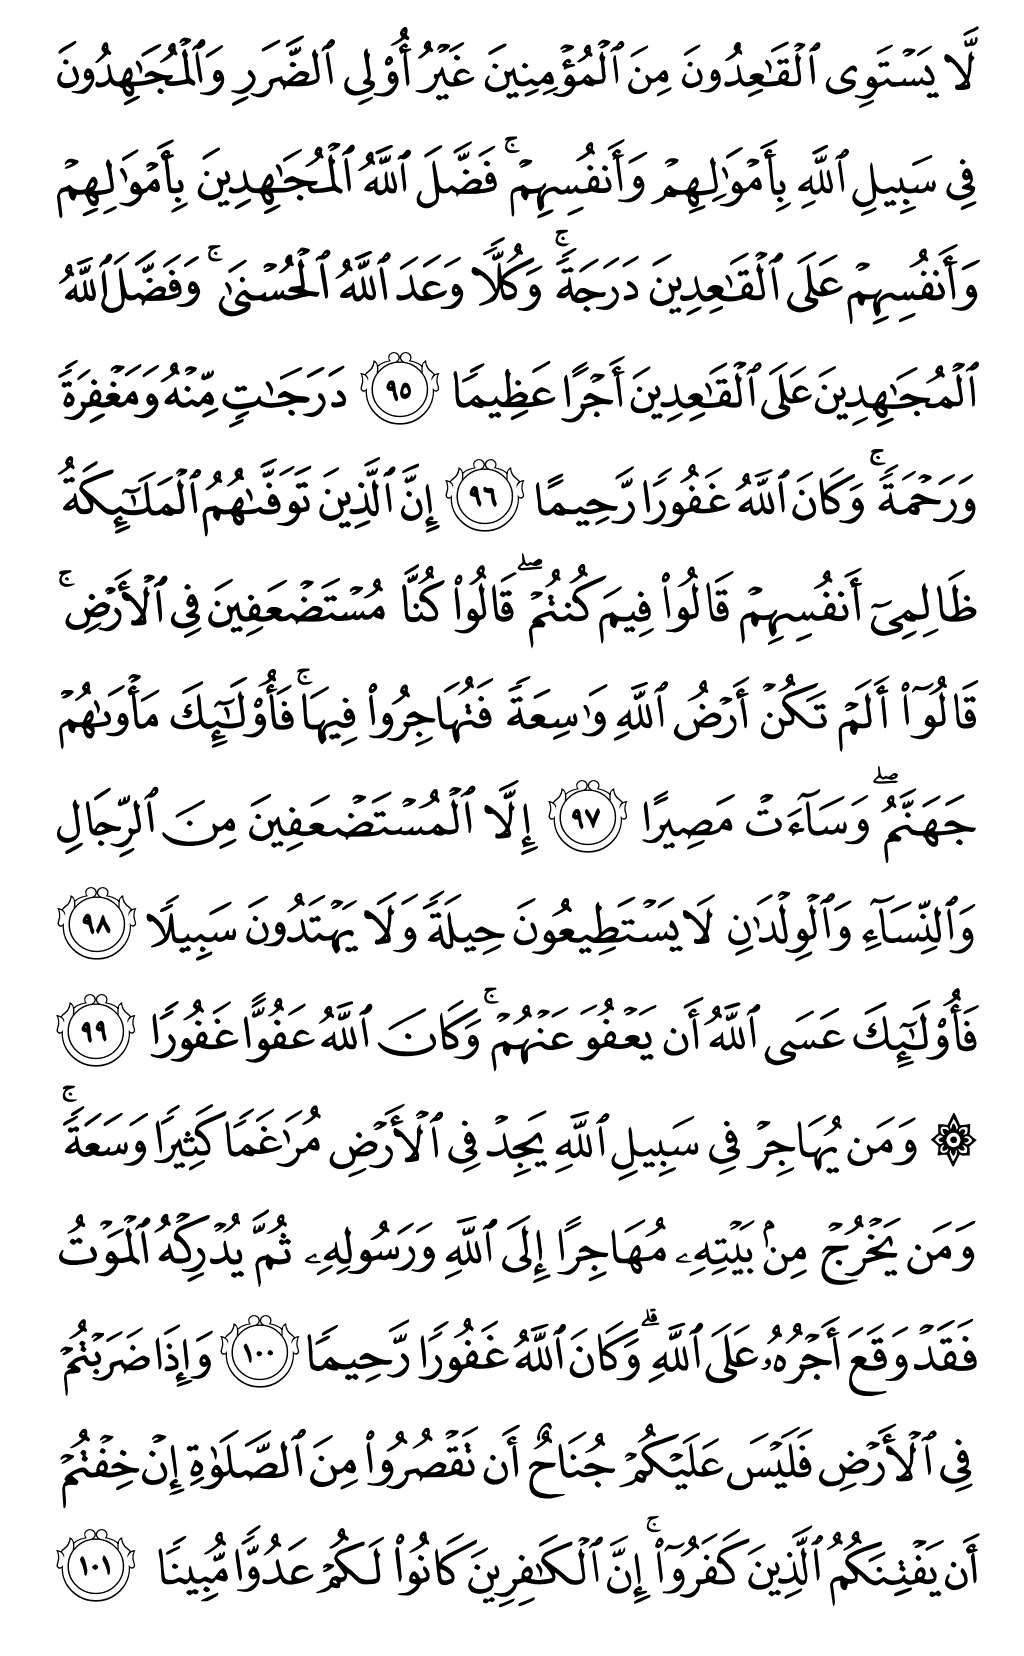 الصفحة رقم 94 من القرآن الكريم